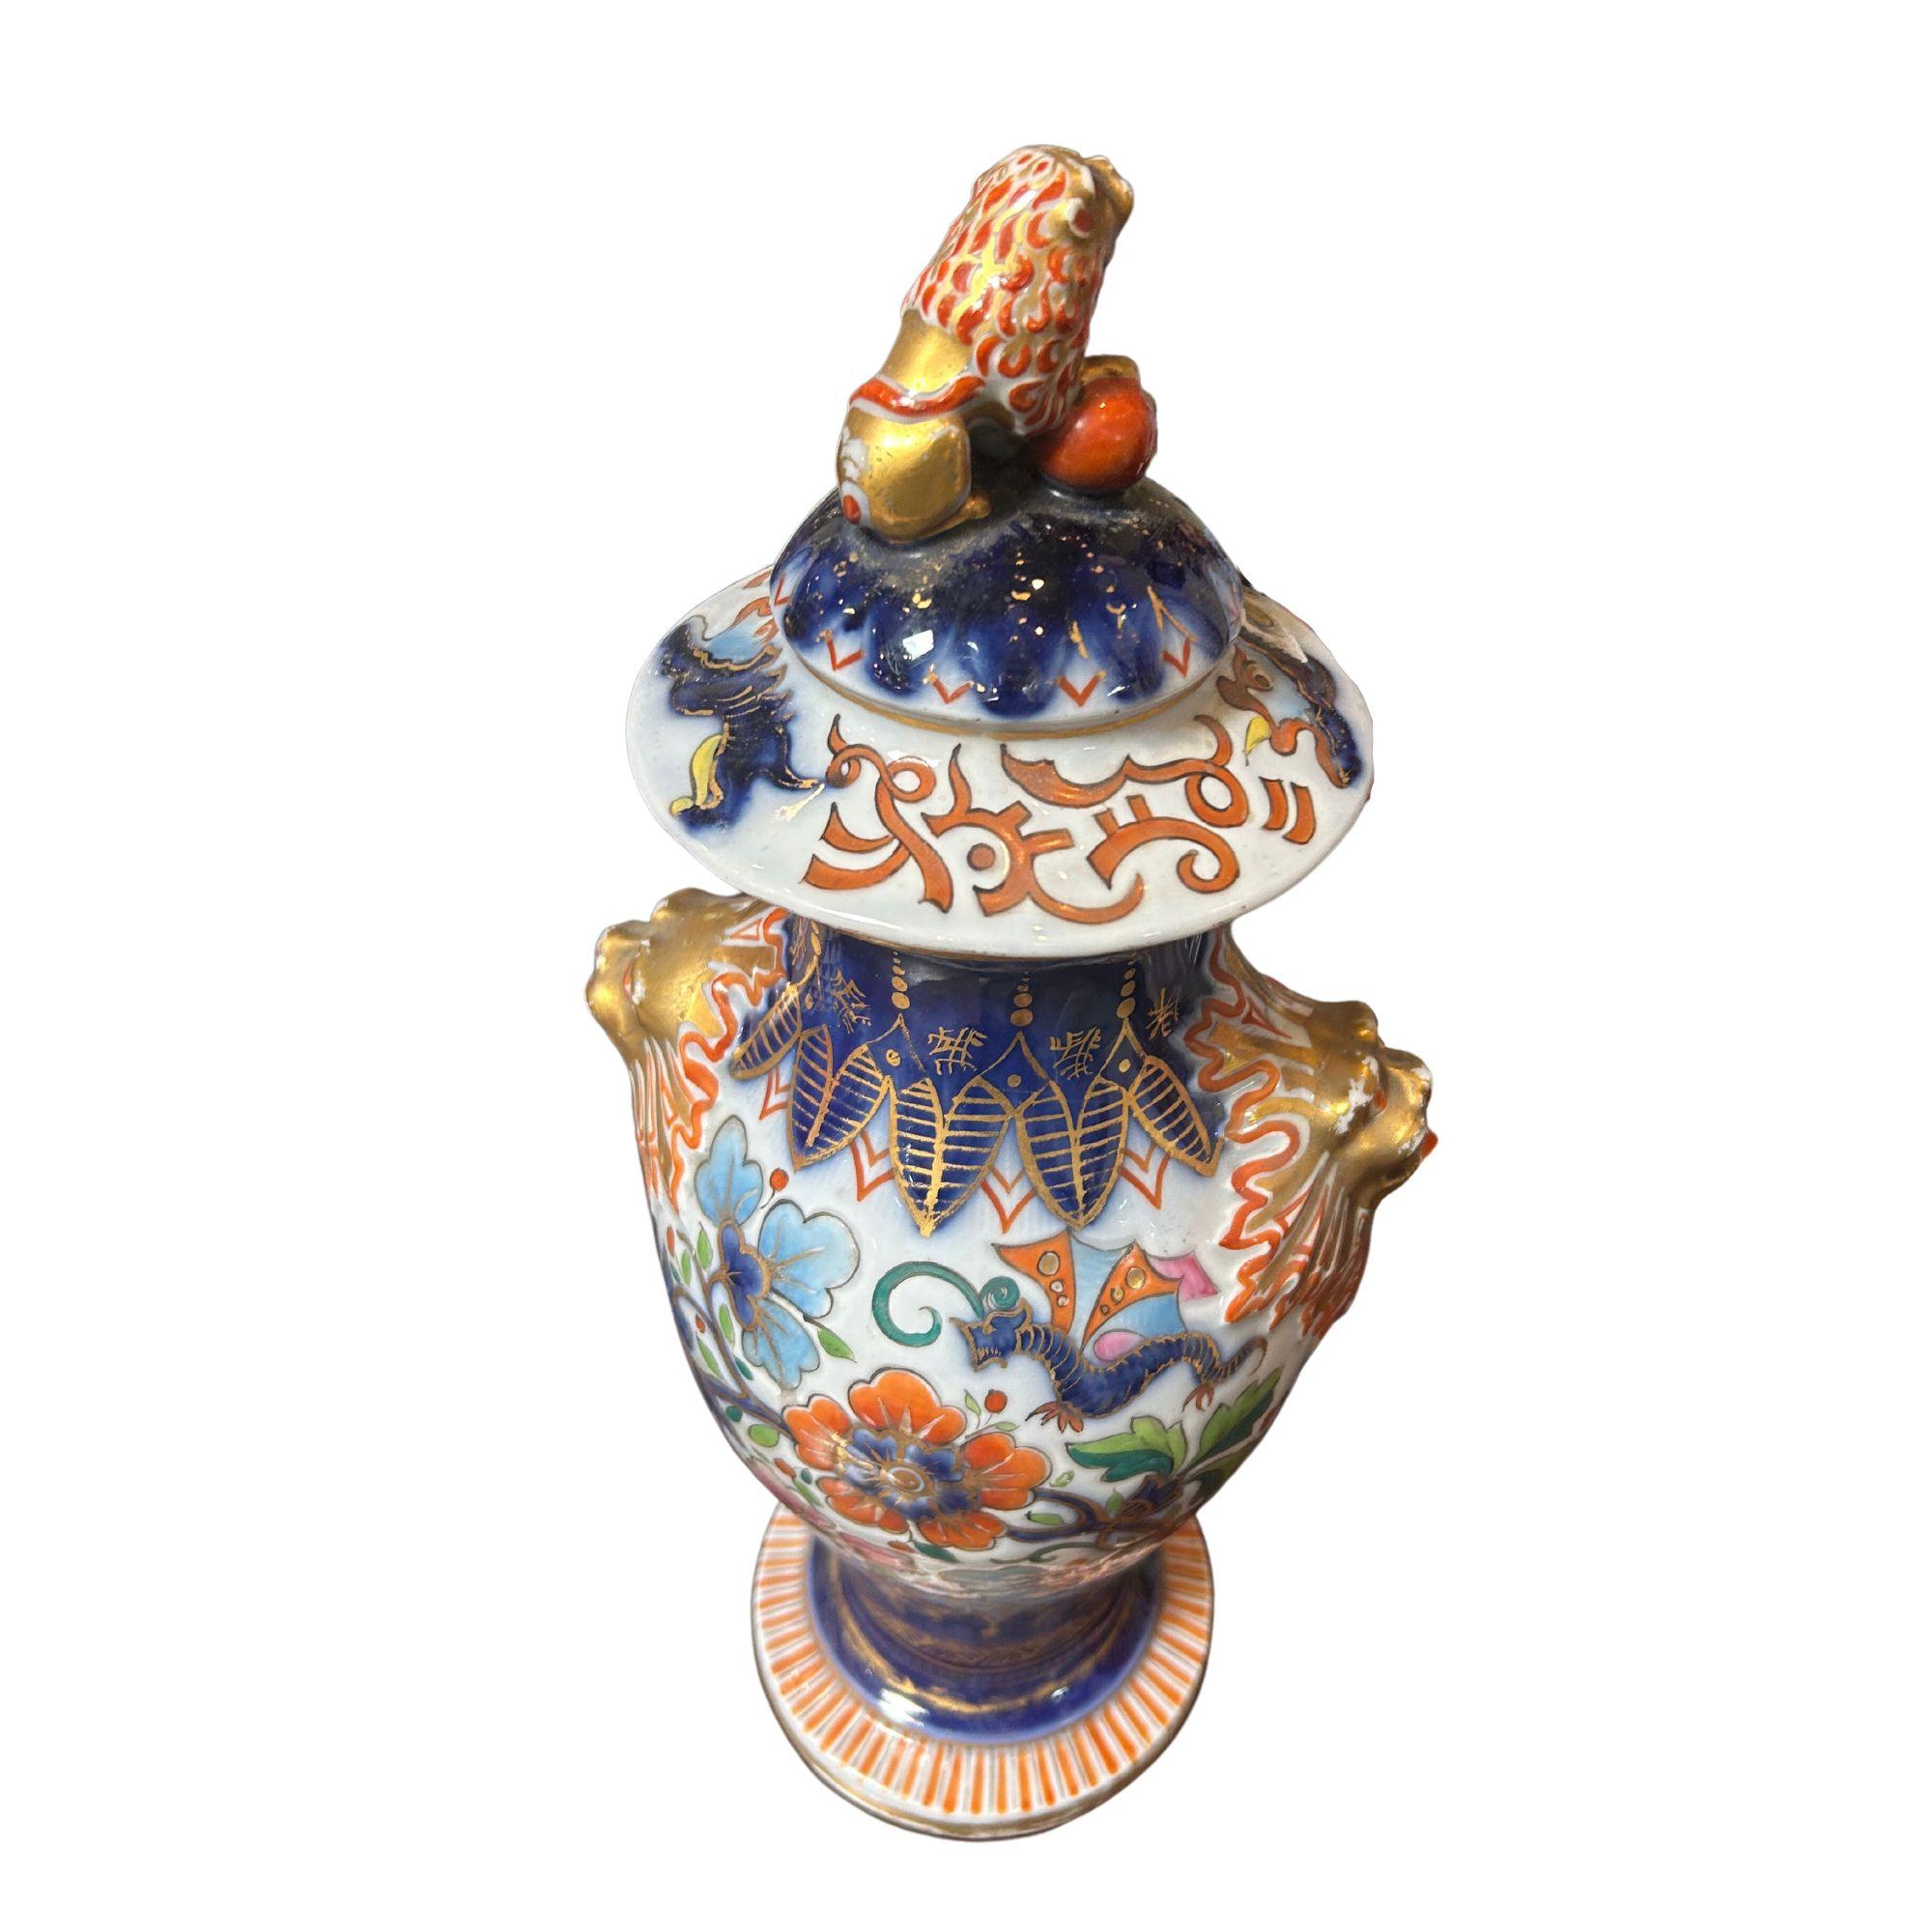 Vase d'exportation chinois peint du 19e siècle avec des accents dorés de belles figures chinoises, des motifs floraux colorés et un motif de tête de lion, avec couvercle, acheté à Paris